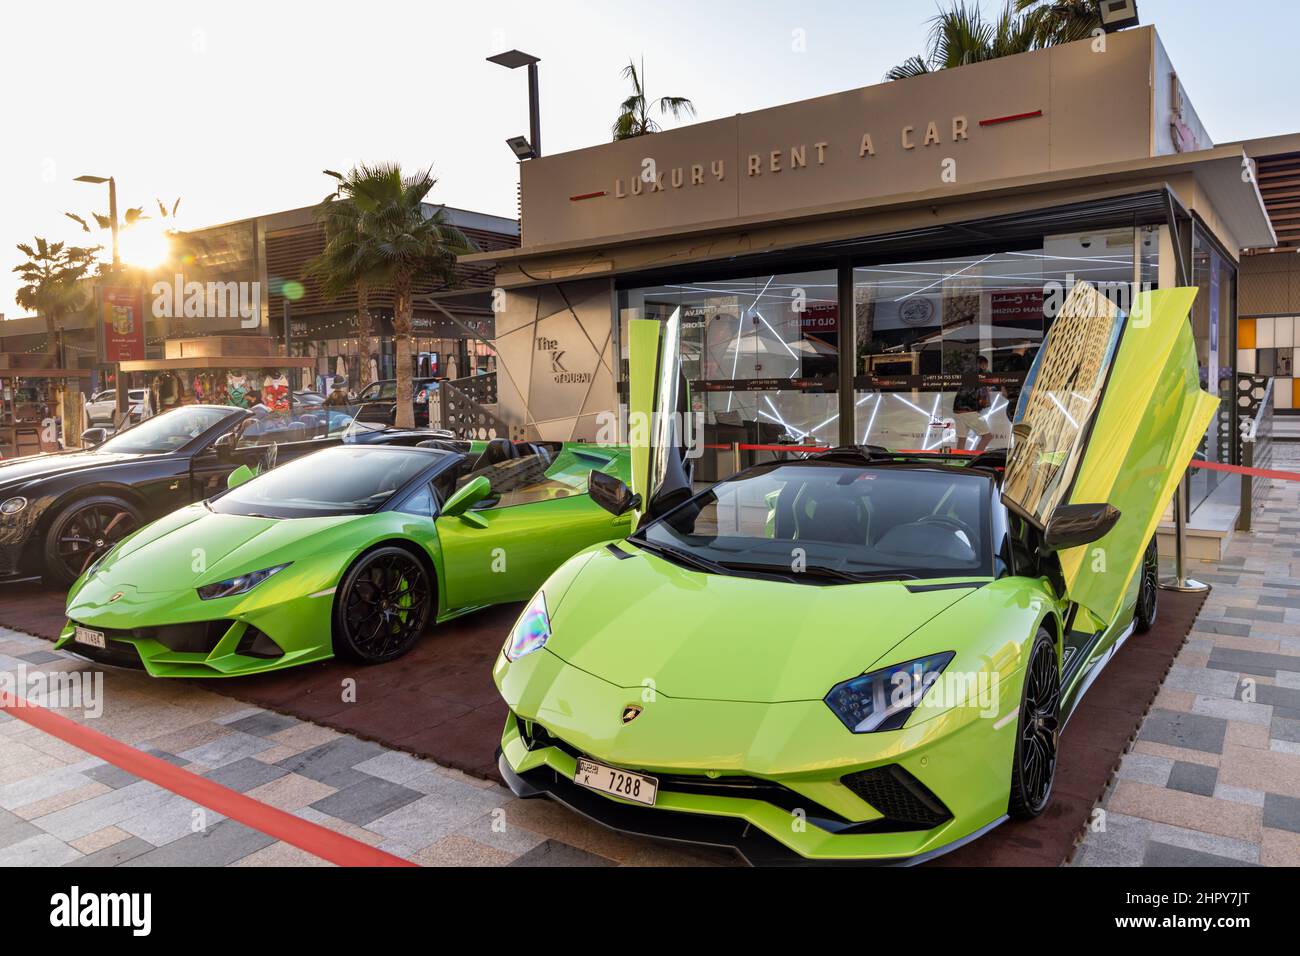 Voiture de luxe vert lime Lamborghini à louer à Dubaï. Émirats arabes Unis Banque D'Images